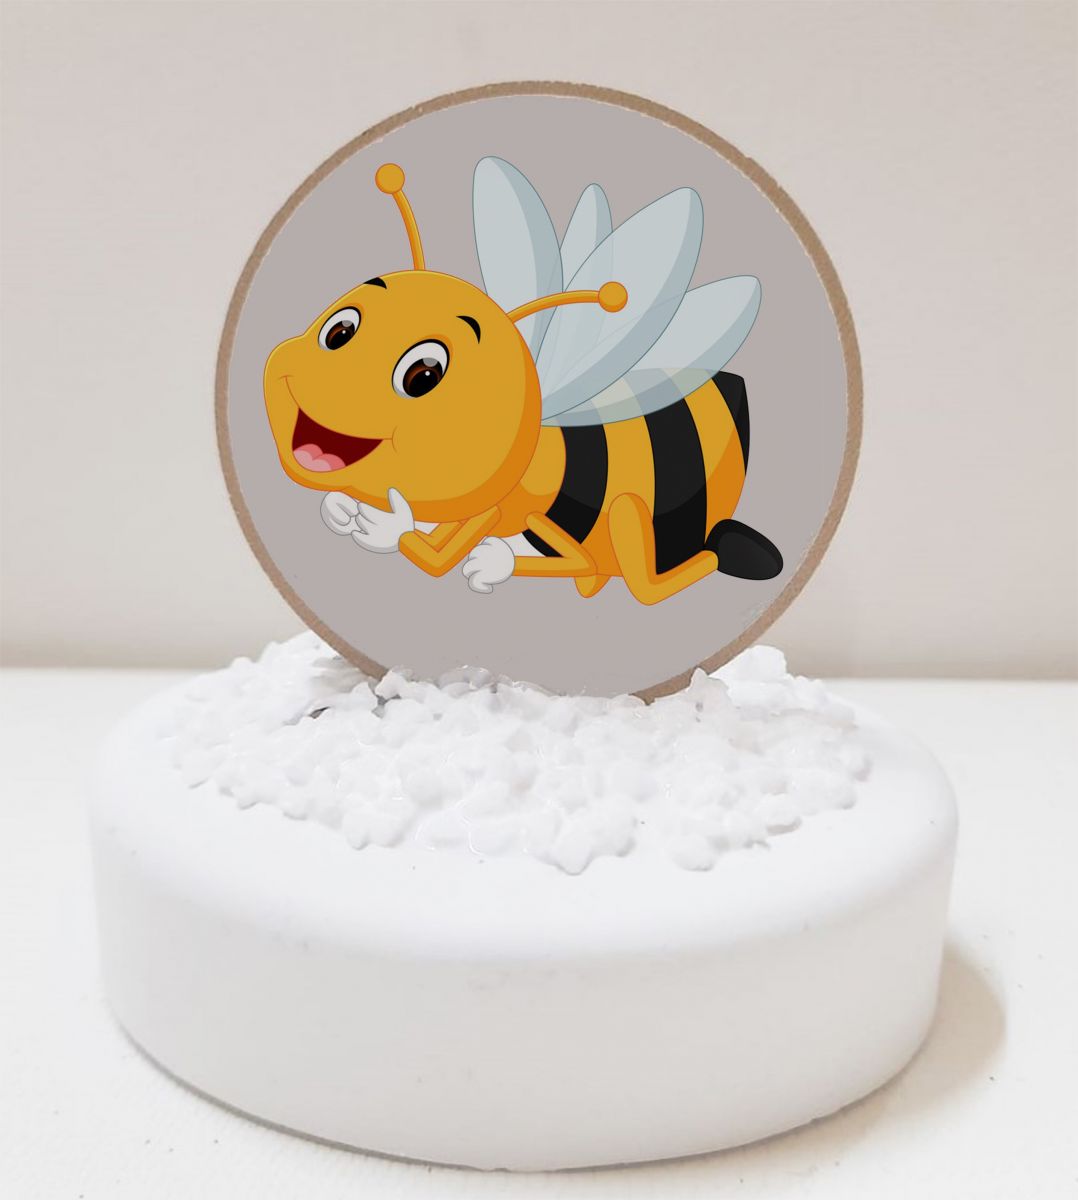 μελισσούλα Ξύλινη Φιγούρα Εκτυπωμένη Σε Πέτρα Βότσαλο Μπομπονιέρα Βάπτισης Τιμή 1.69€